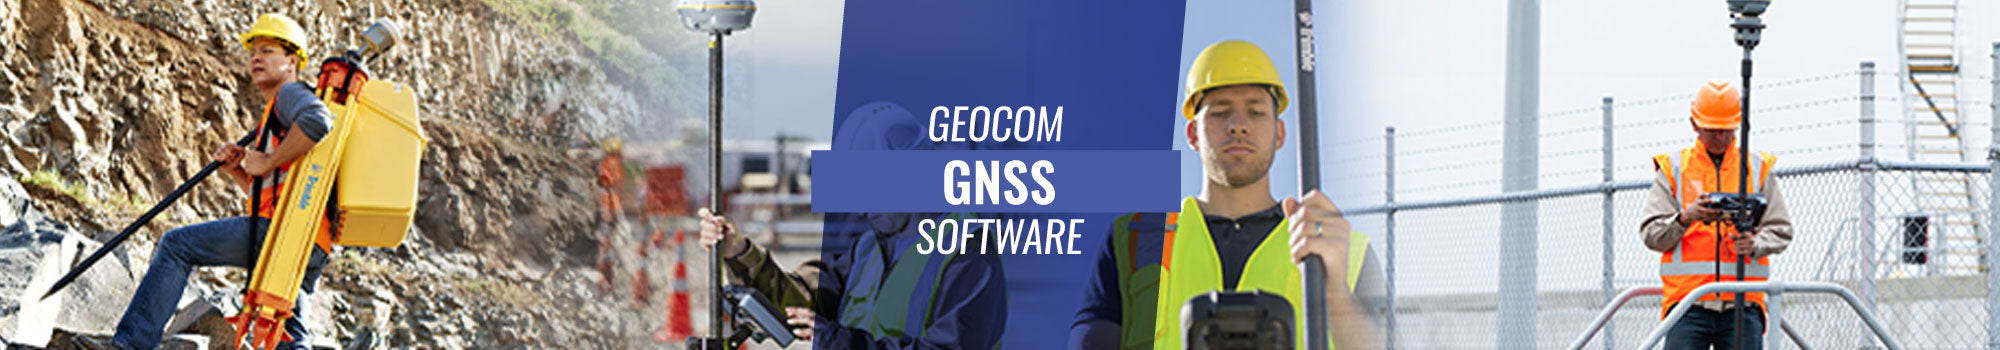 Software GNSS